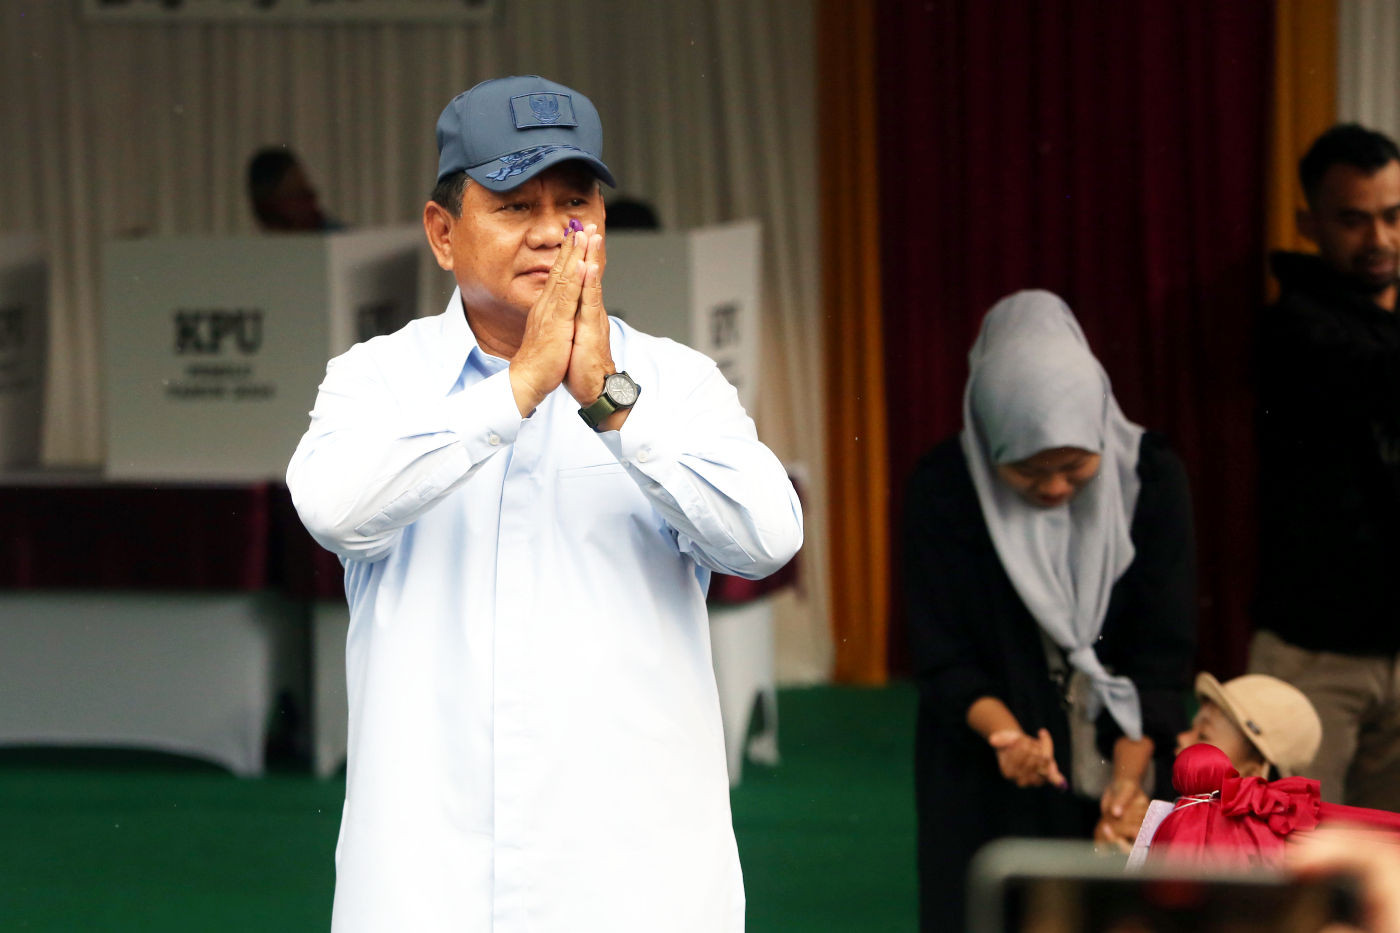 Pengamat Yakin Prabowo Mampu Selaraskan PDIP dengan Partai di KIM - JPNN.com